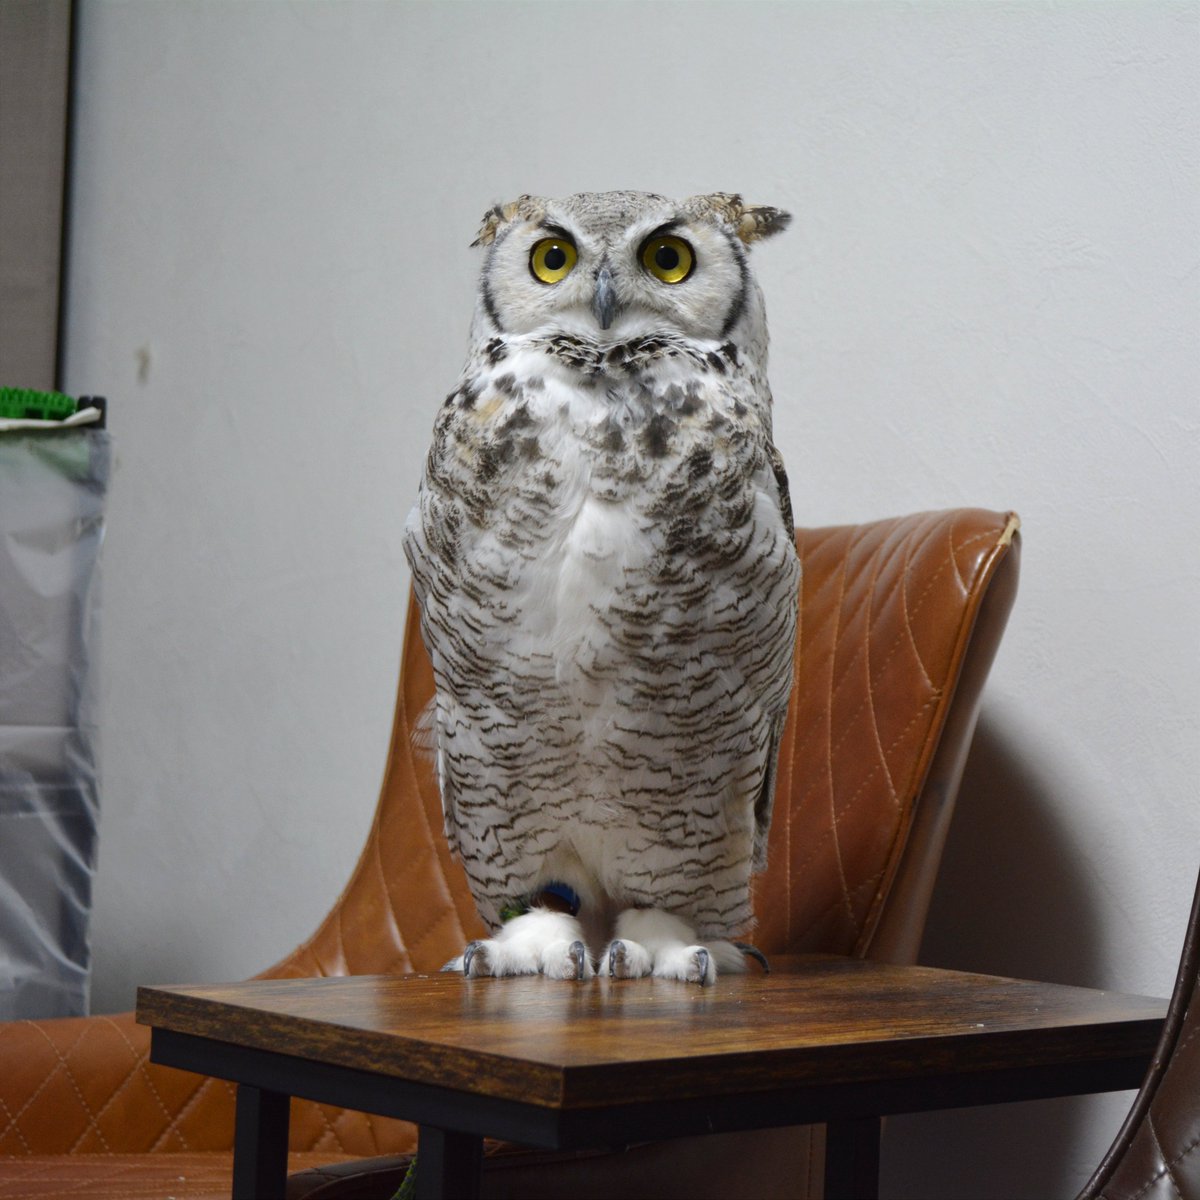 おはホロ〜🦉
#フクロウ #アメリカワシミミズク
#owl #GreatHornedOwl